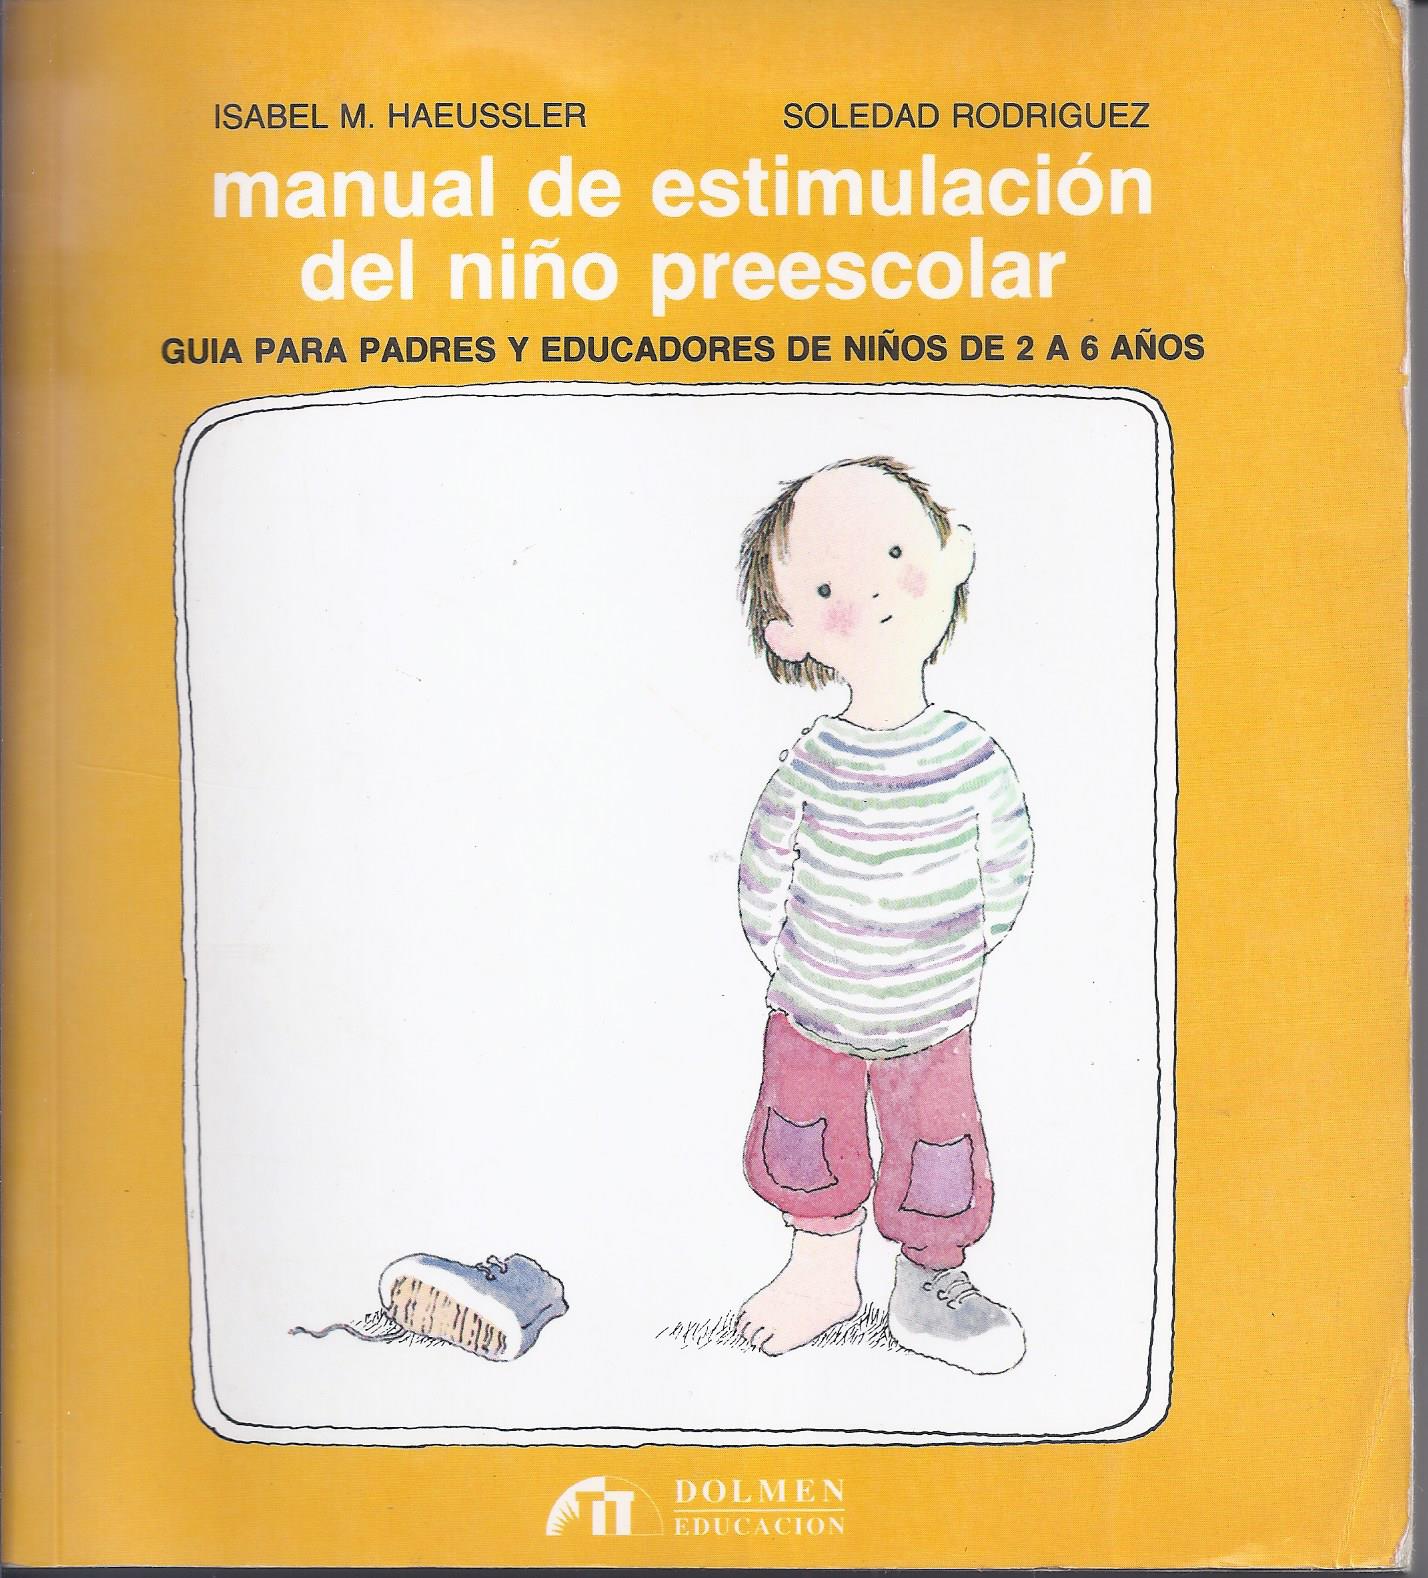 Manual de estimulación del niño preescolar